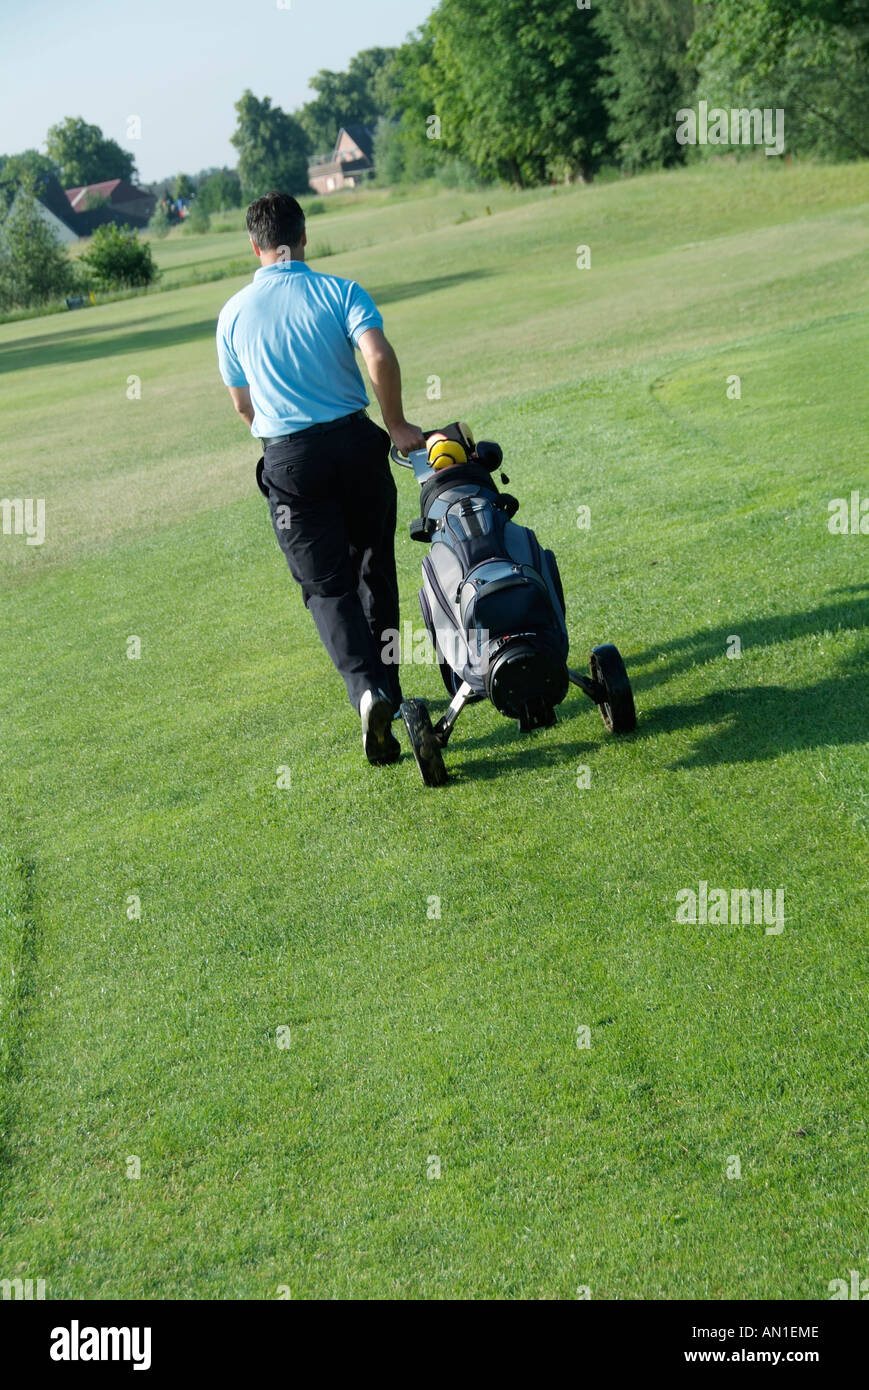 Golf Golf Golf golf, un joueur qui possède son chariot sur fairway Banque D'Images